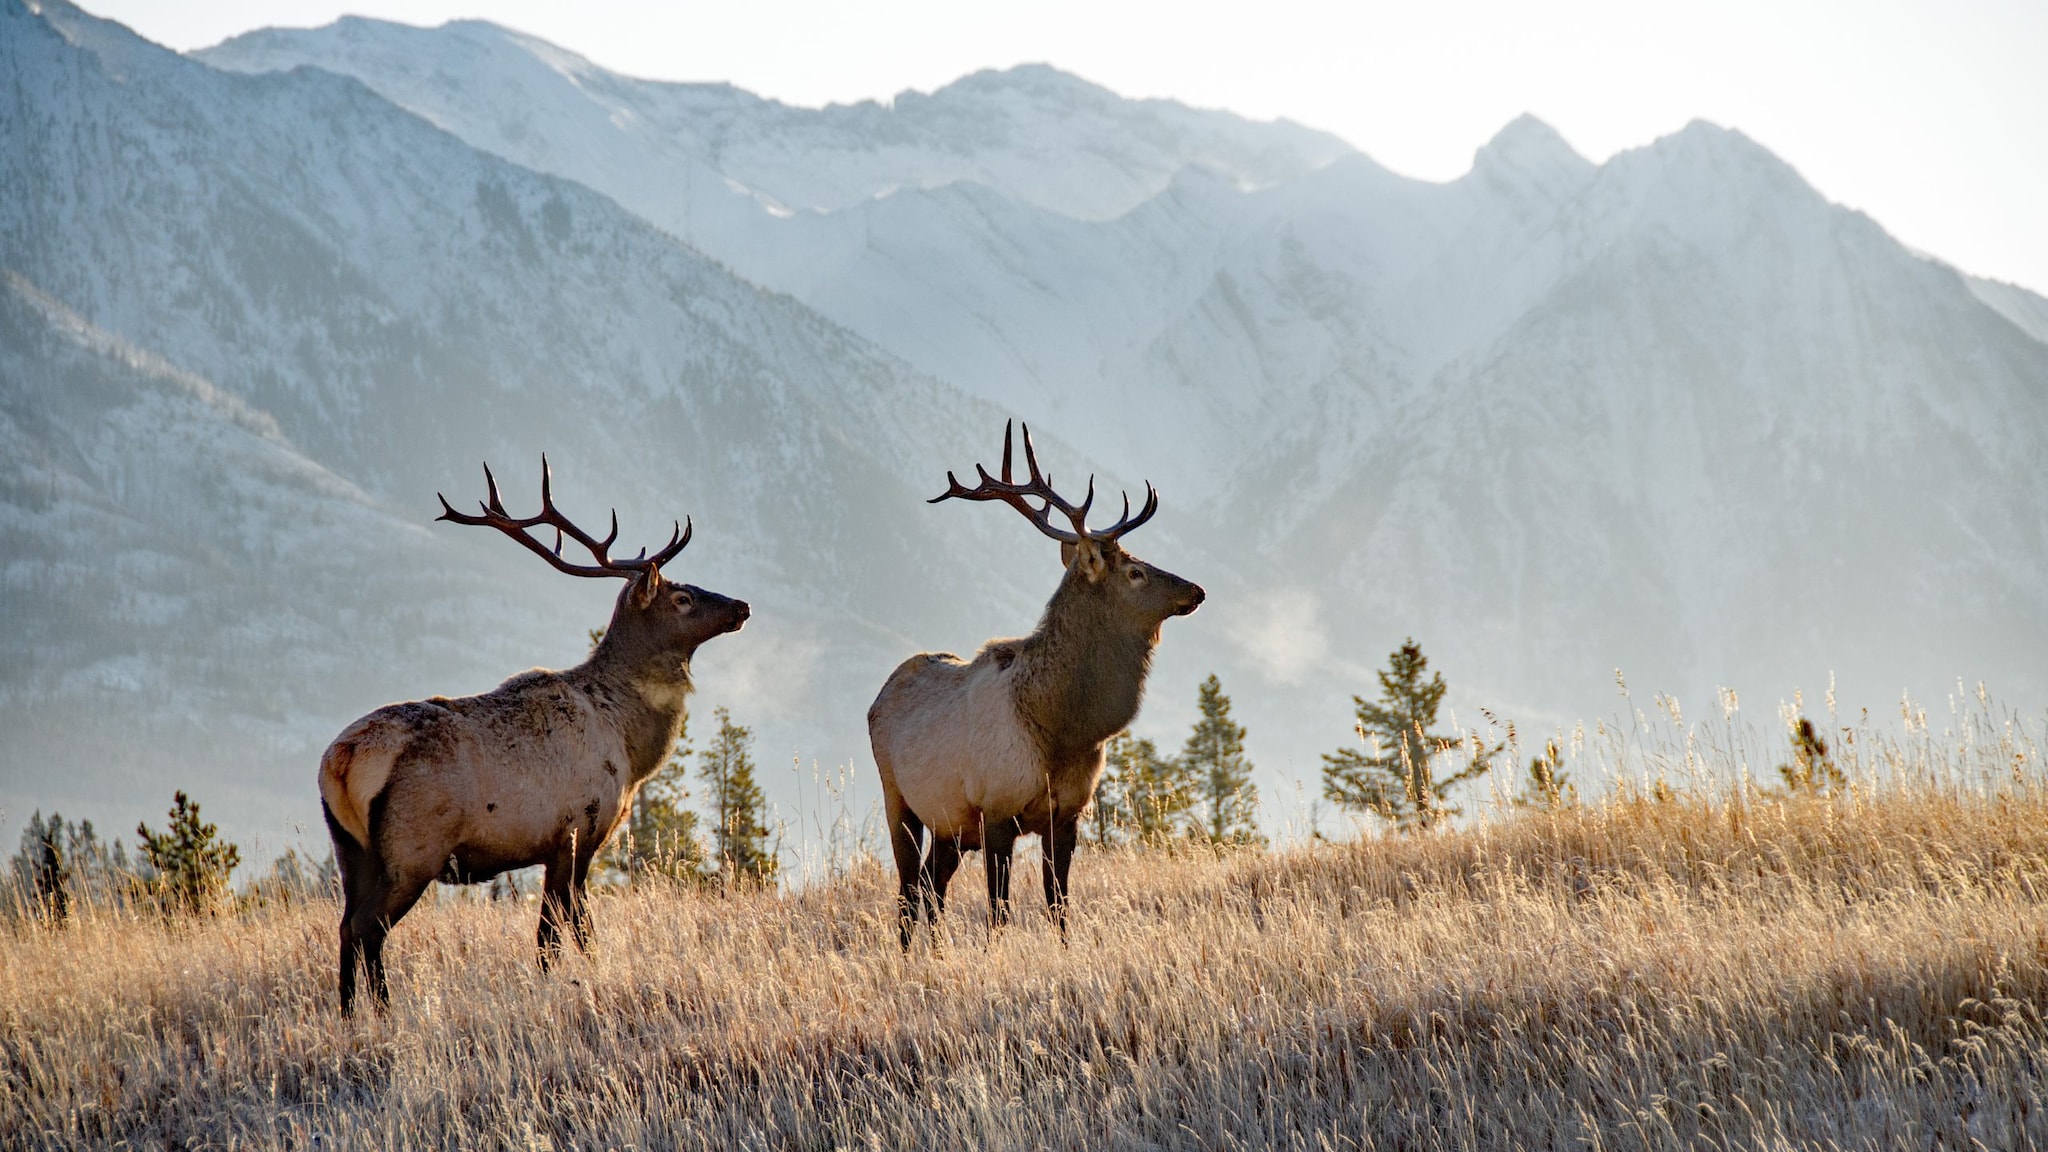 Two elk in a field in front of a mountain range.